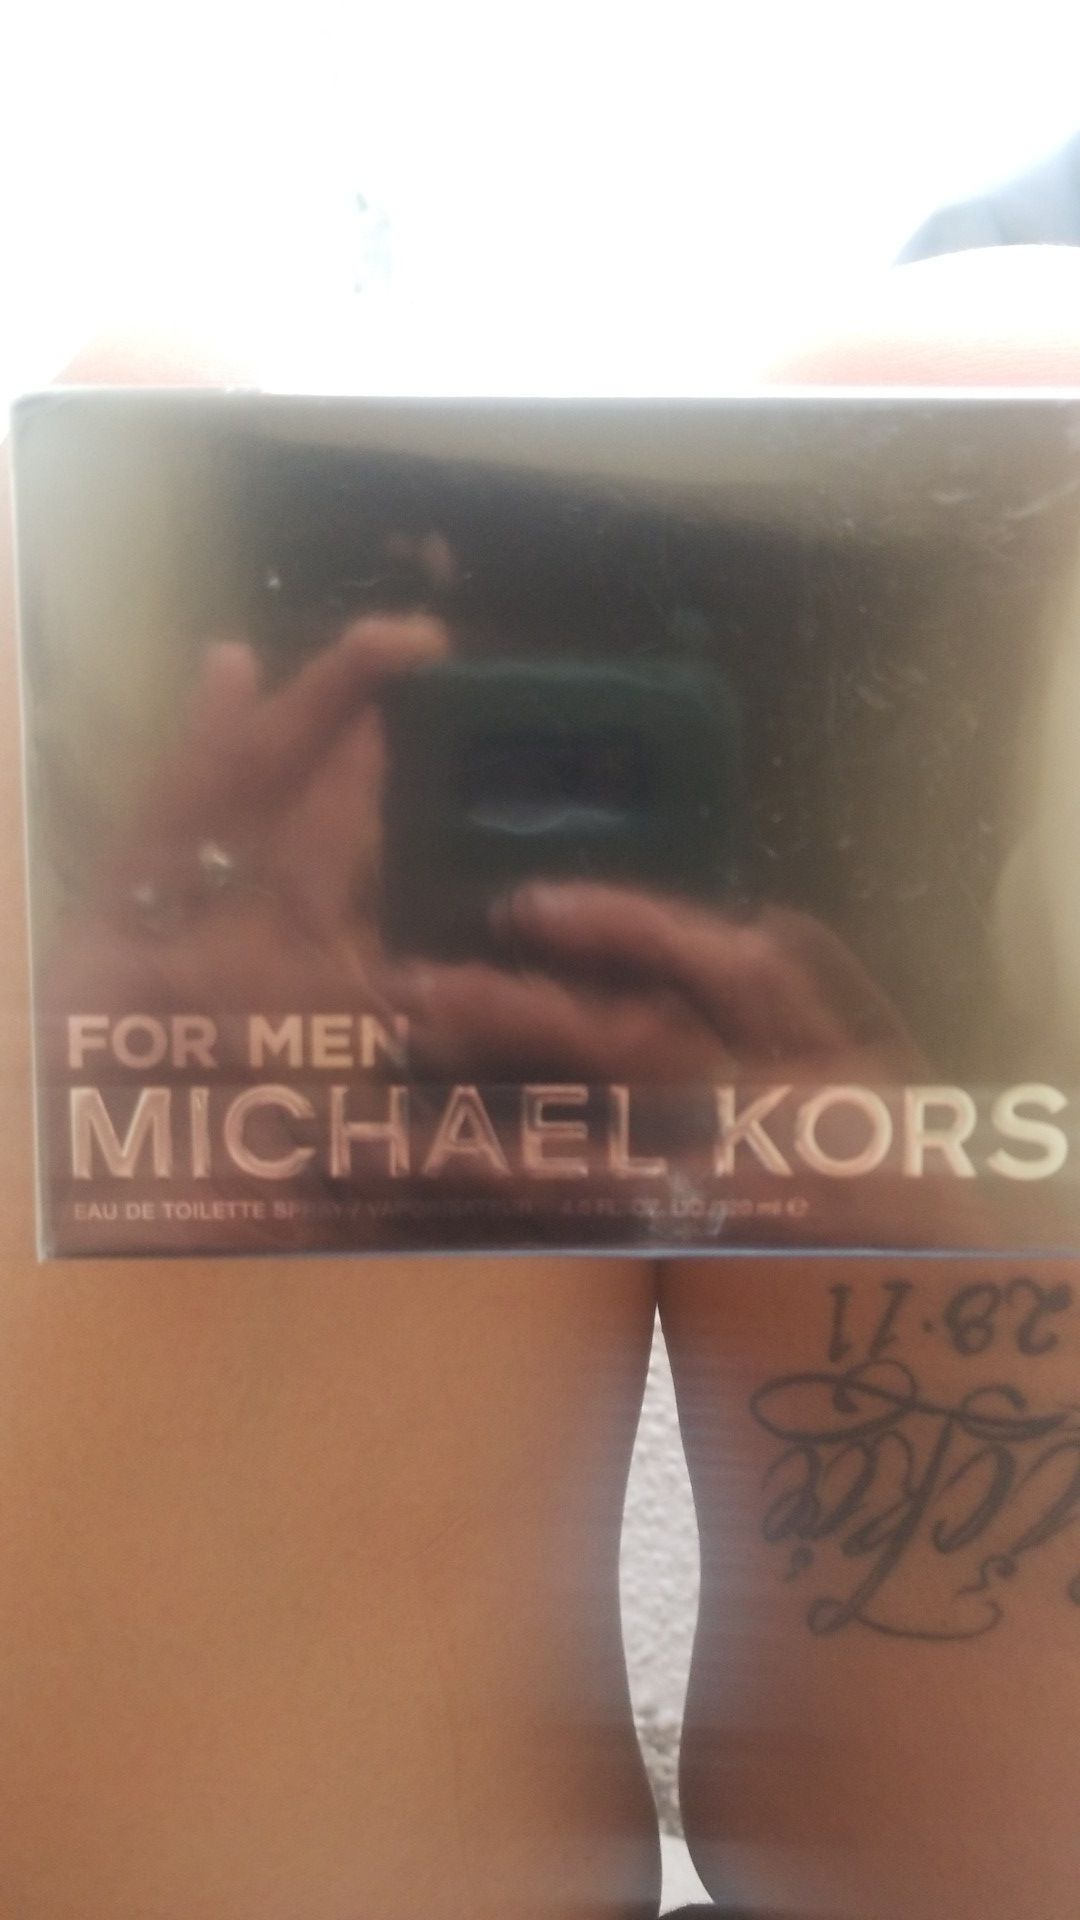 Michael Kors for men cologne